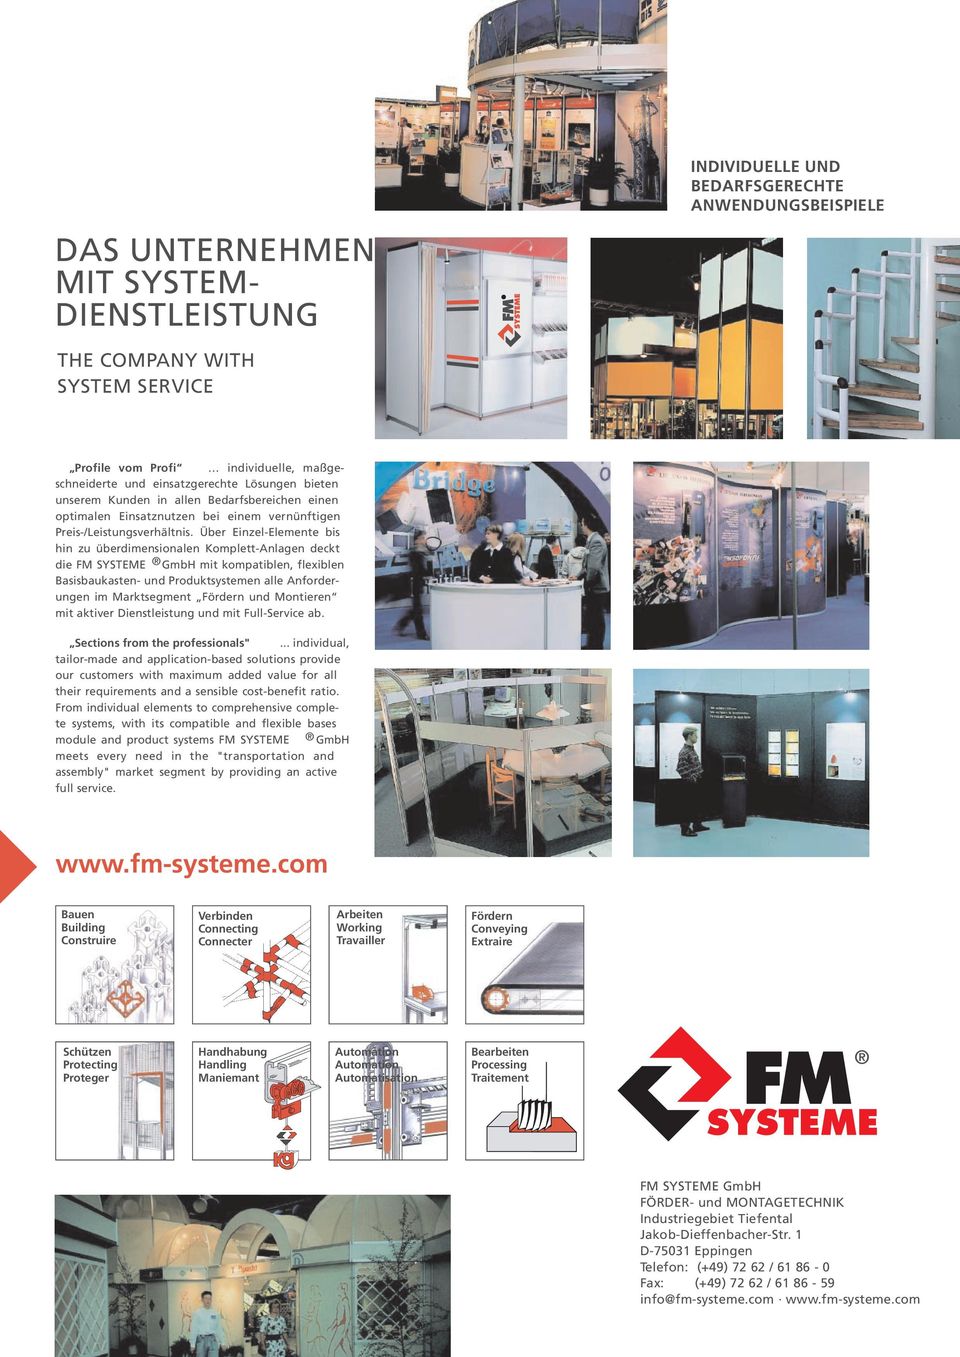 Über Einzel-Elemente bis hin zu überdimensionalen Komplett-Anlagen deckt die FM SYSTEME GmbH mit kompatiblen, flexiblen Basisbaukasten- und Produktsystemen alle Anforderungen im Marktsegment Fördern